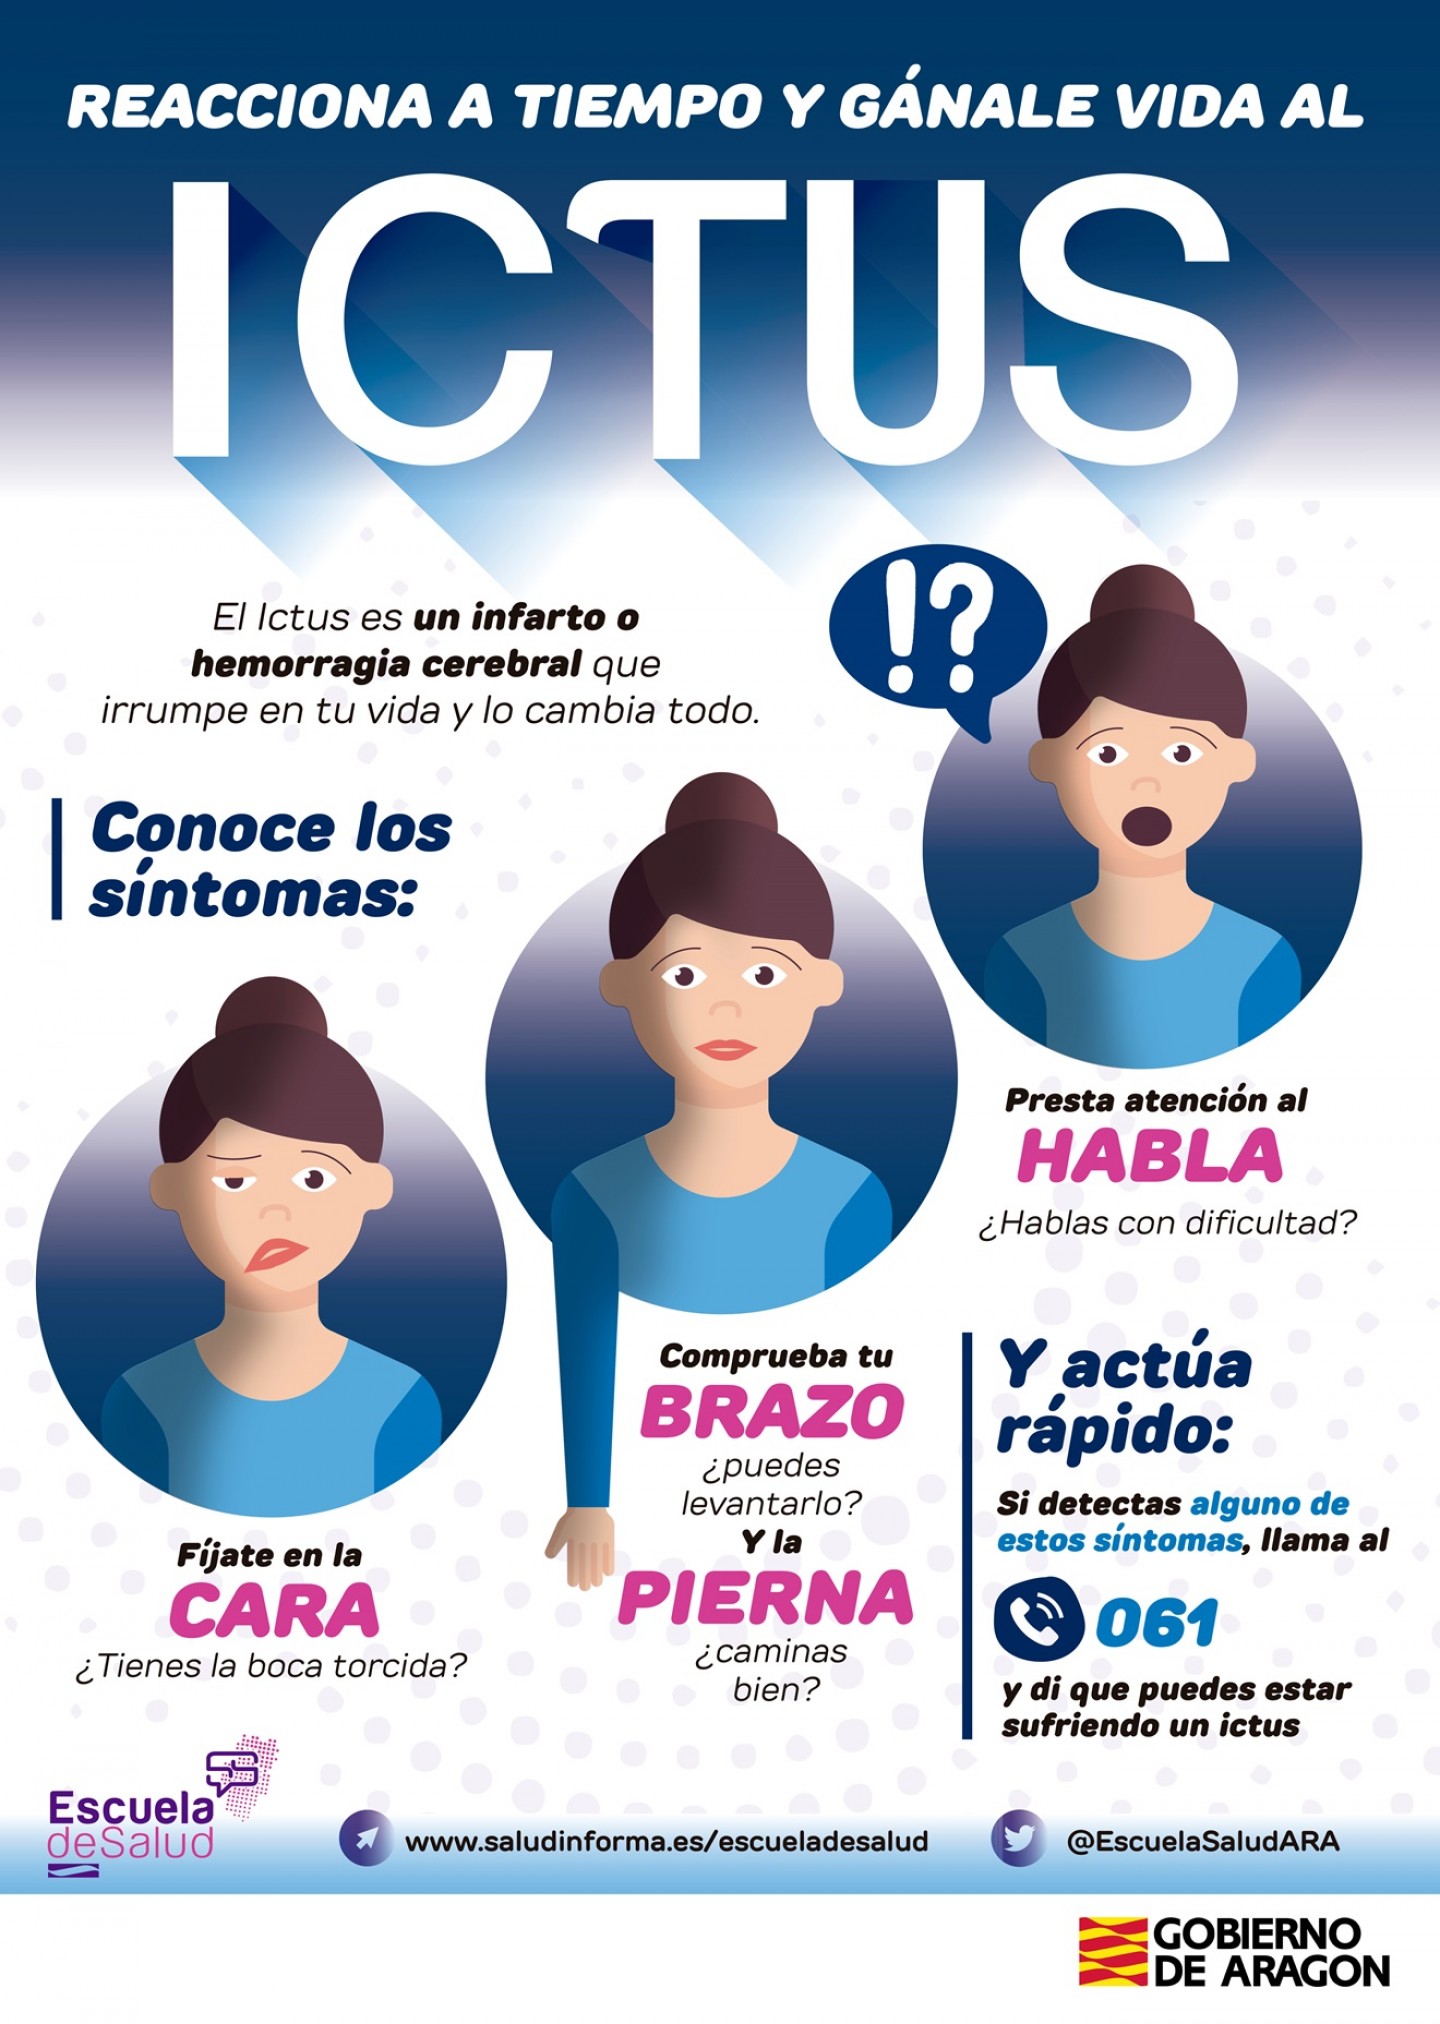 La Escuela de Salud de Aragón informa sobre el ictus a través de historias de pacientes